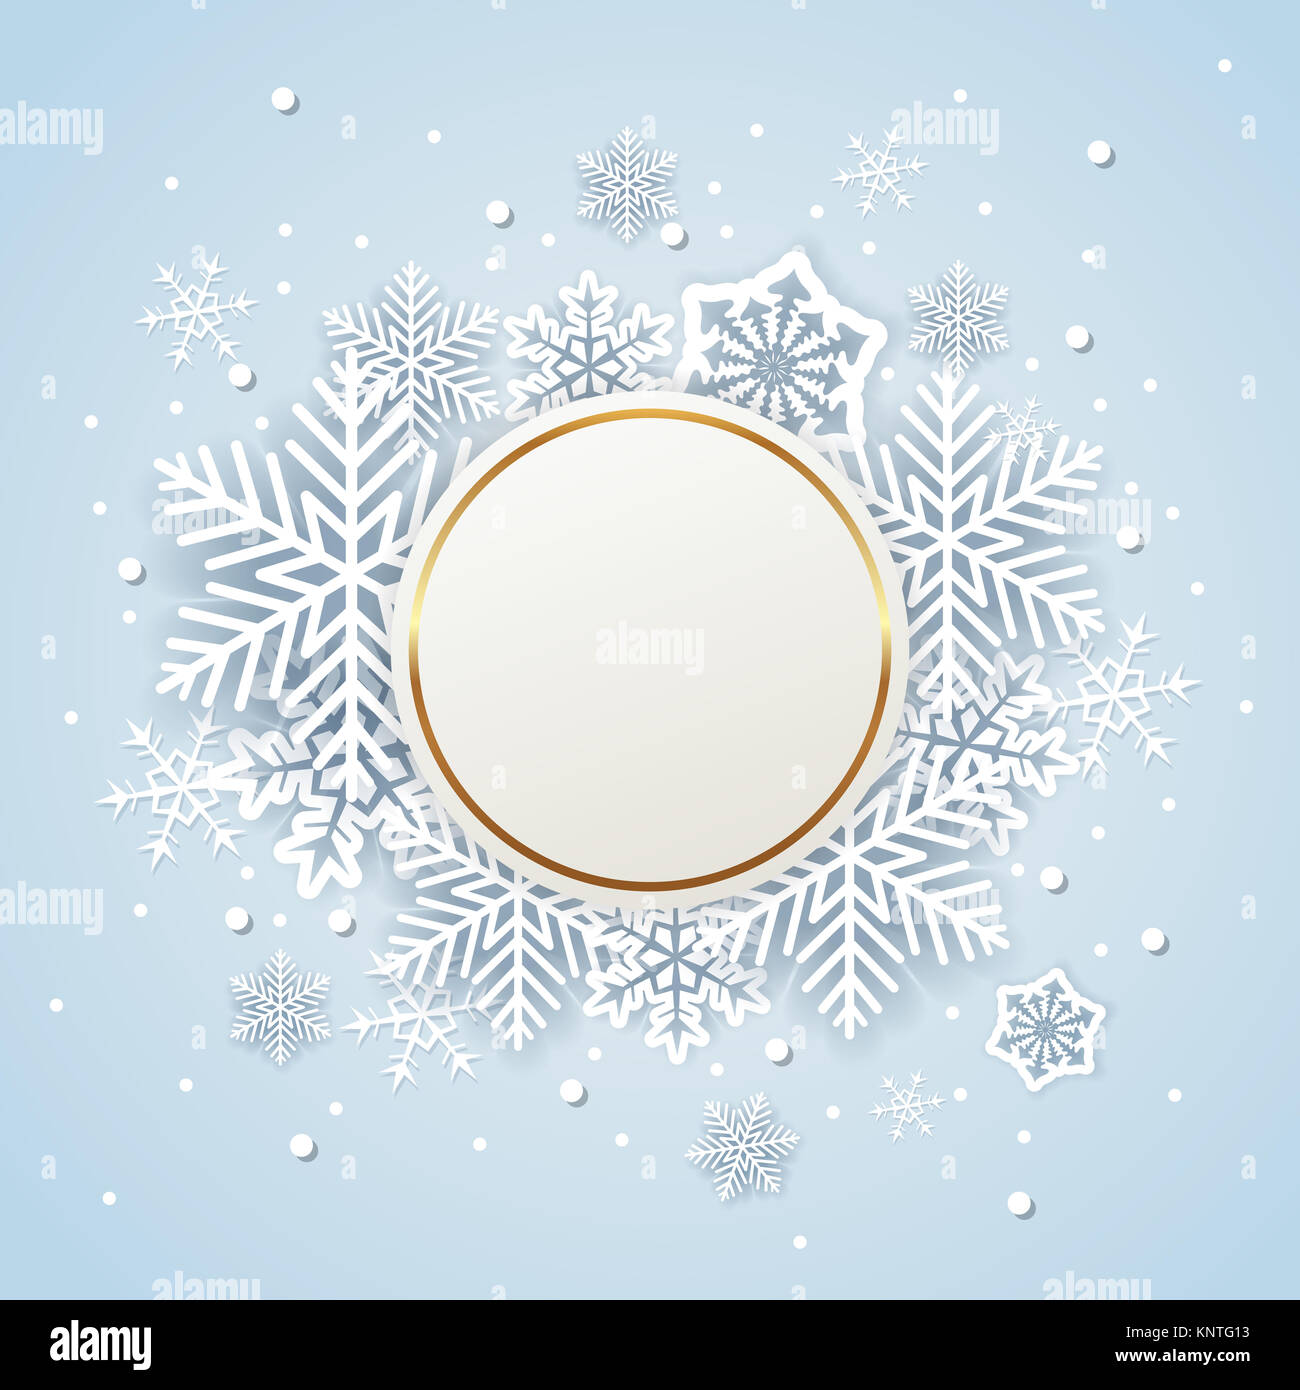 Golden holiday lo sfondo con il Libro bianco di fiocchi di neve. Abstract round banner di Natale. Foto Stock